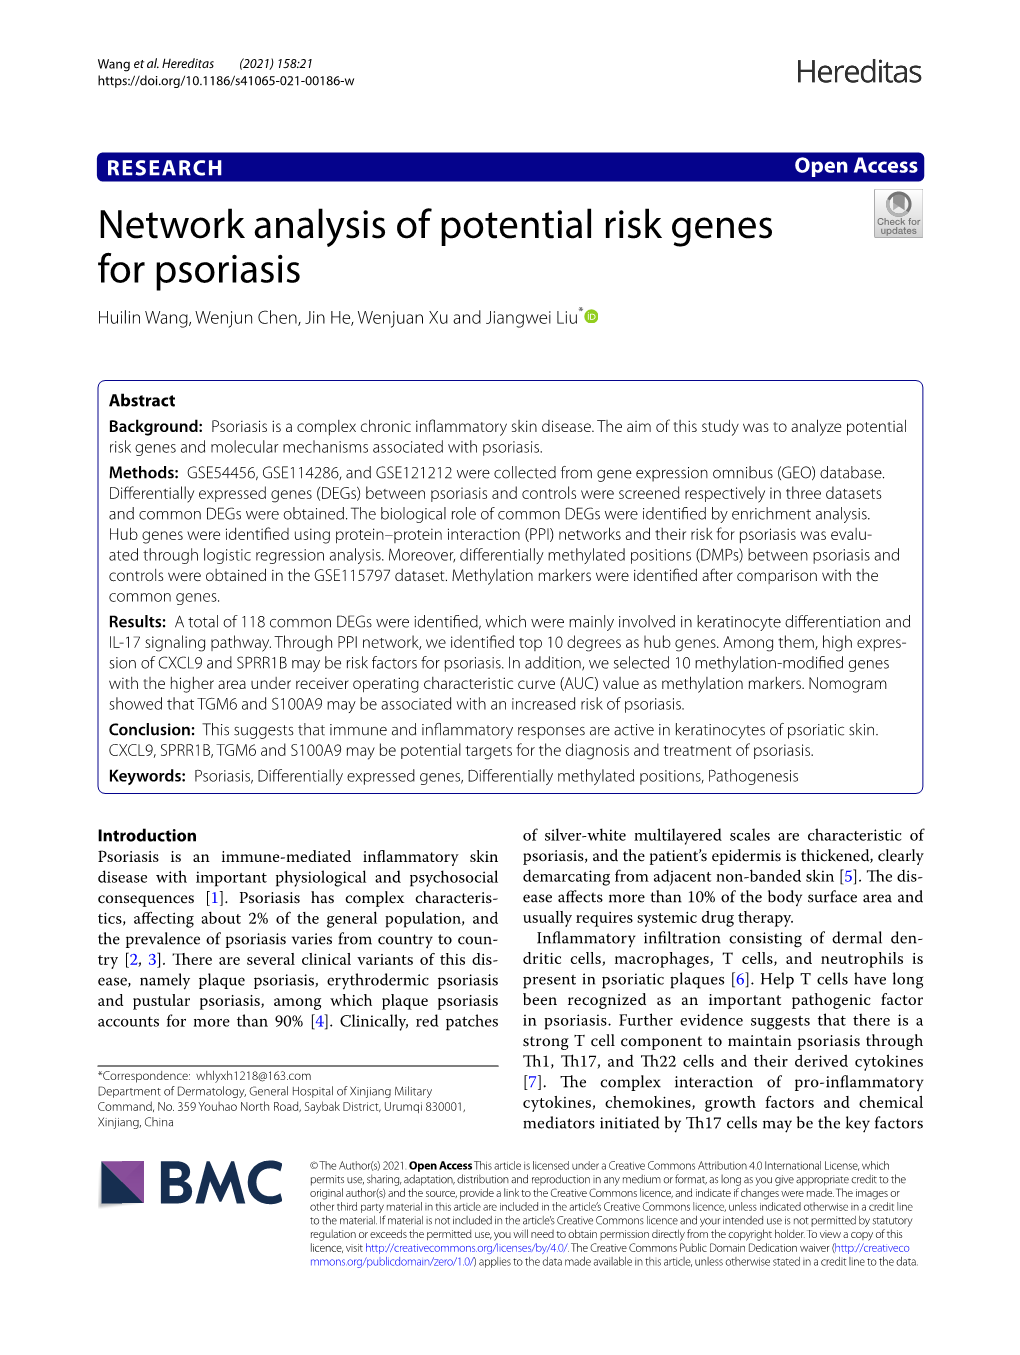 Network Analysis of Potential Risk Genes for Psoriasis Huilin Wang, Wenjun Chen, Jin He, Wenjuan Xu and Jiangwei Liu*